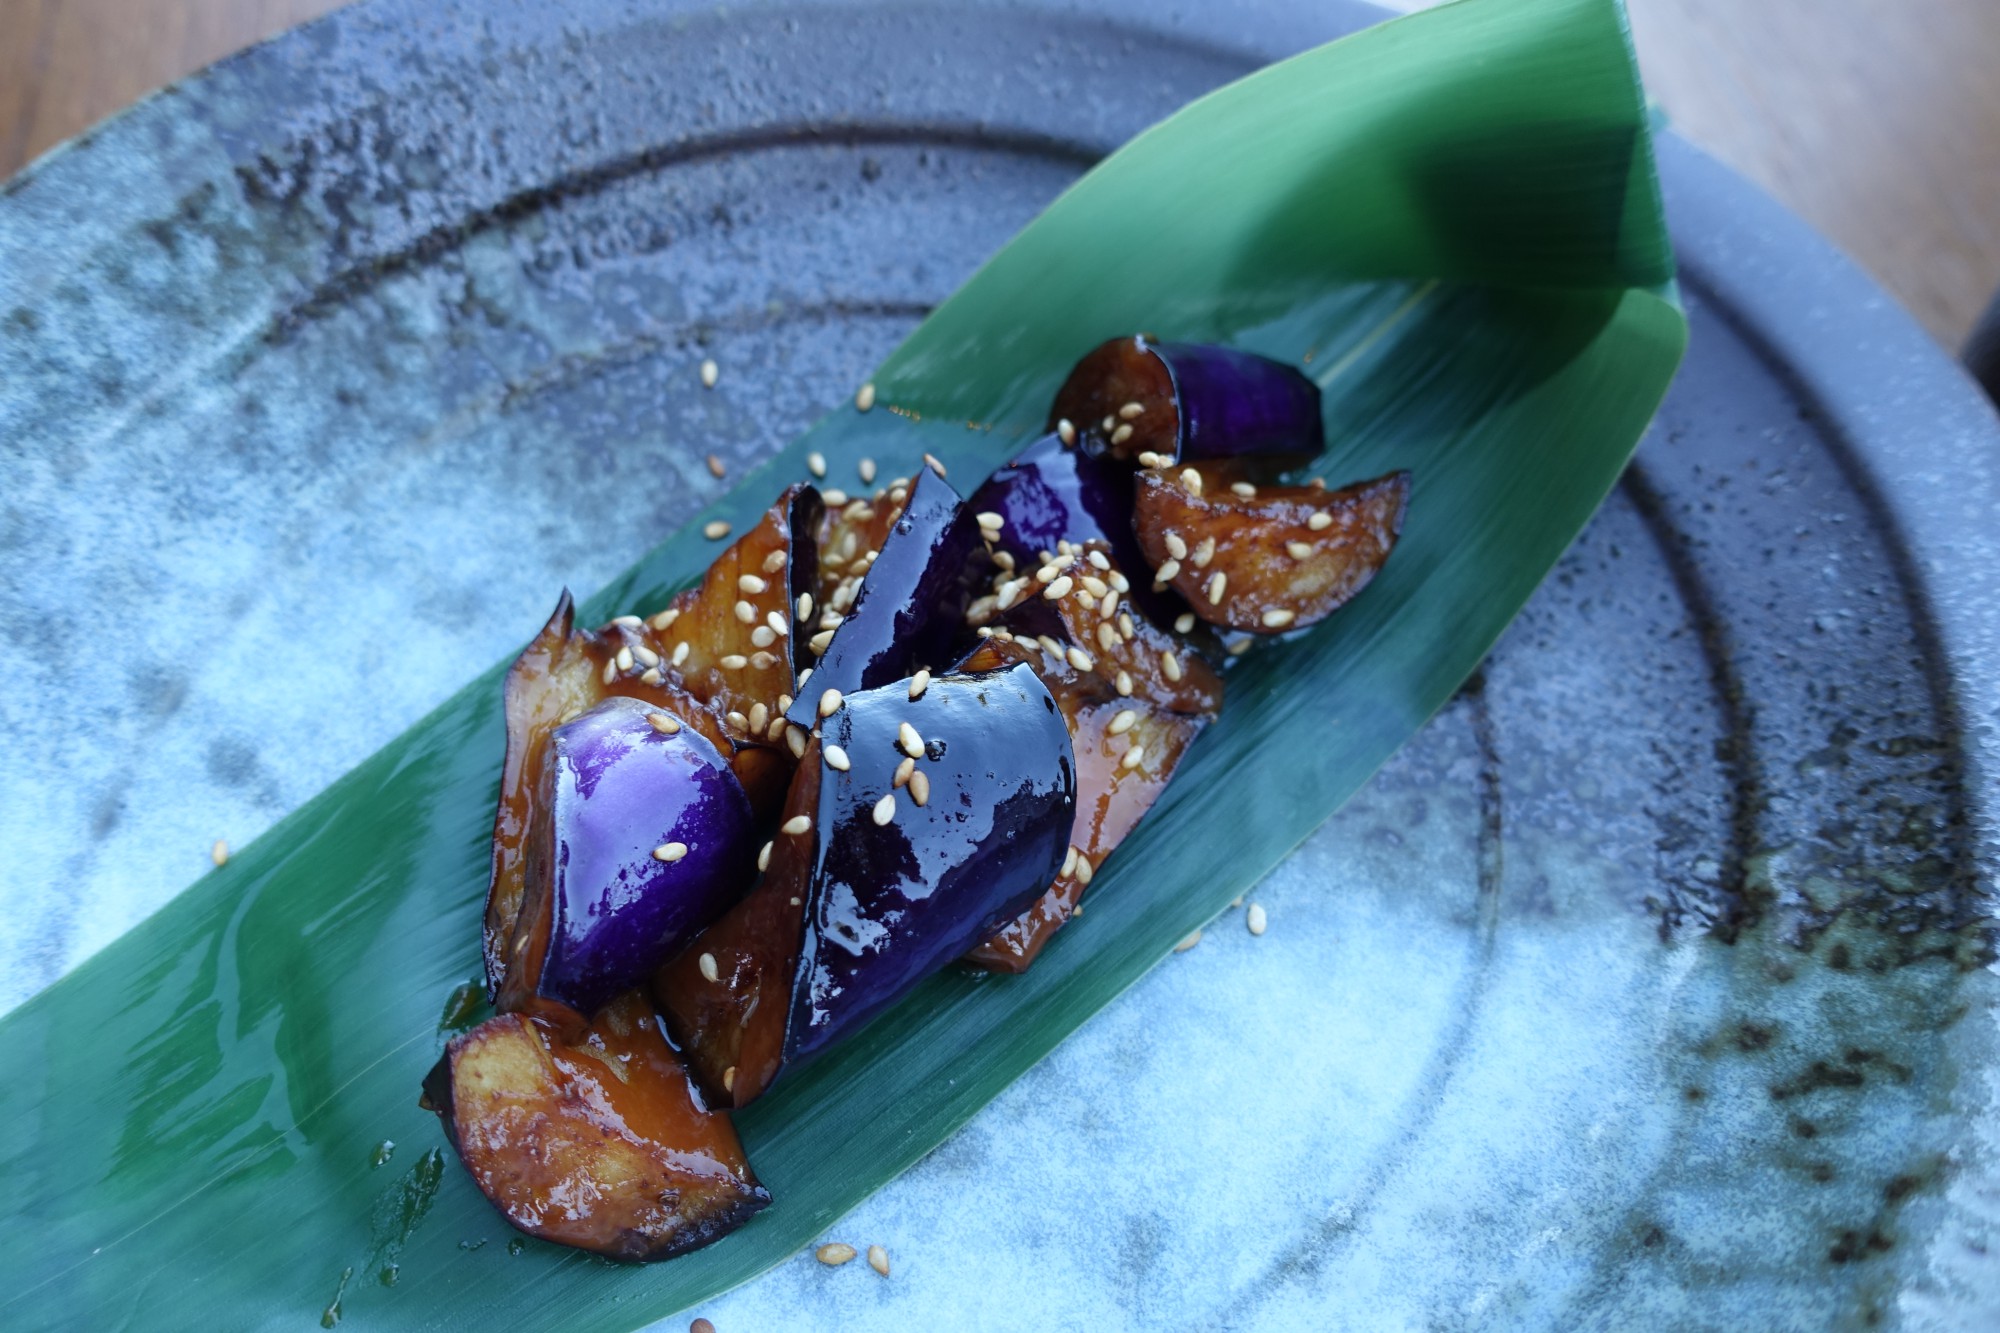 Nobu Lanai Review - Eggplant Miso